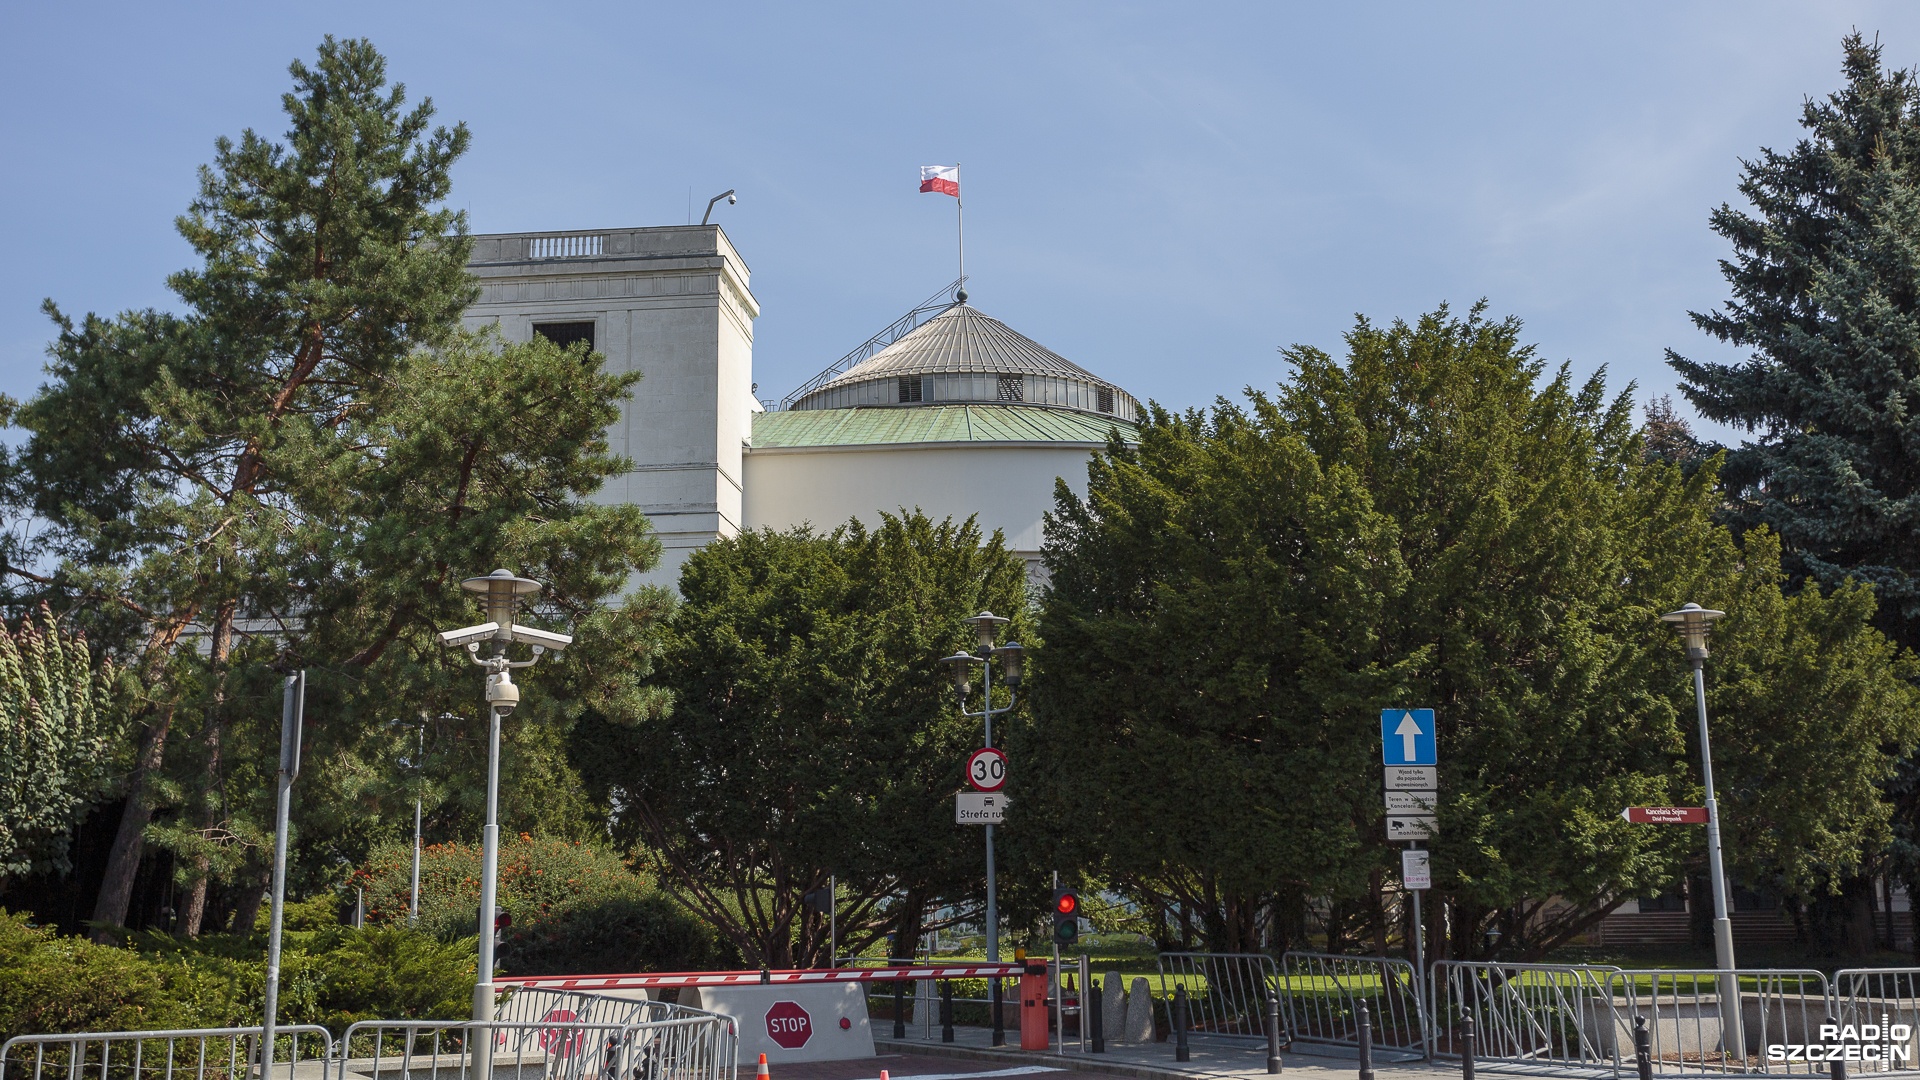 Będą dalsze prace nad ustawą budżetową na 2023 rok. Sejm nie zgodził się na odrzucenie projektu w pierwszym czytaniu, czego domagała się opozycja. Za dalszymi pracami nad ustawą budżetową zagłosowało 232 posłów, przeciwnych było 209, a 4 wstrzymało się od głosowania.